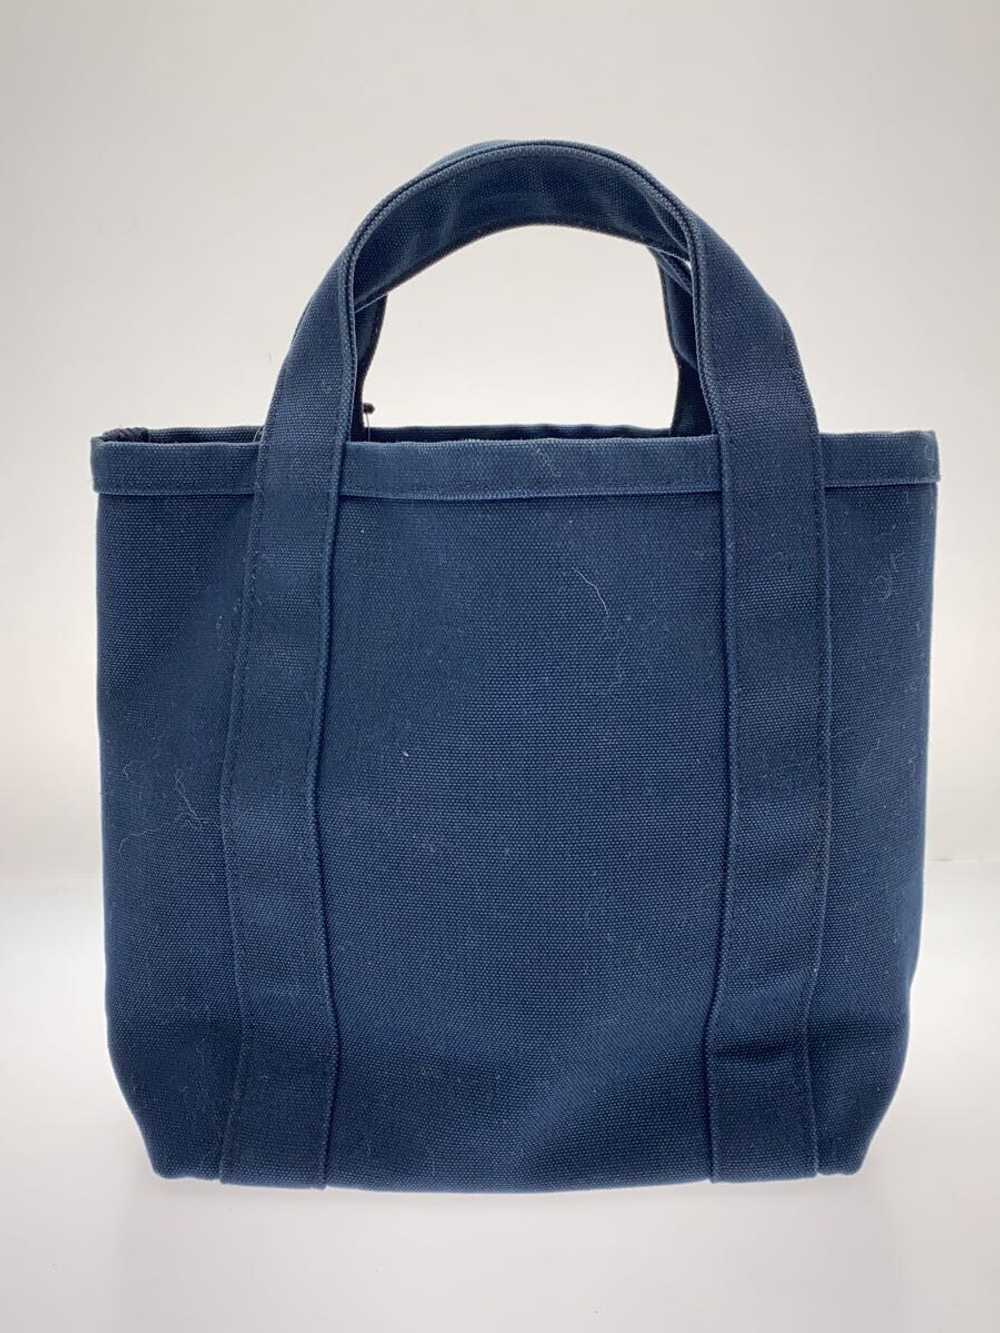 Marimekko Mini Tote Bag/Canvas/Nvy/Plain Bag - image 3